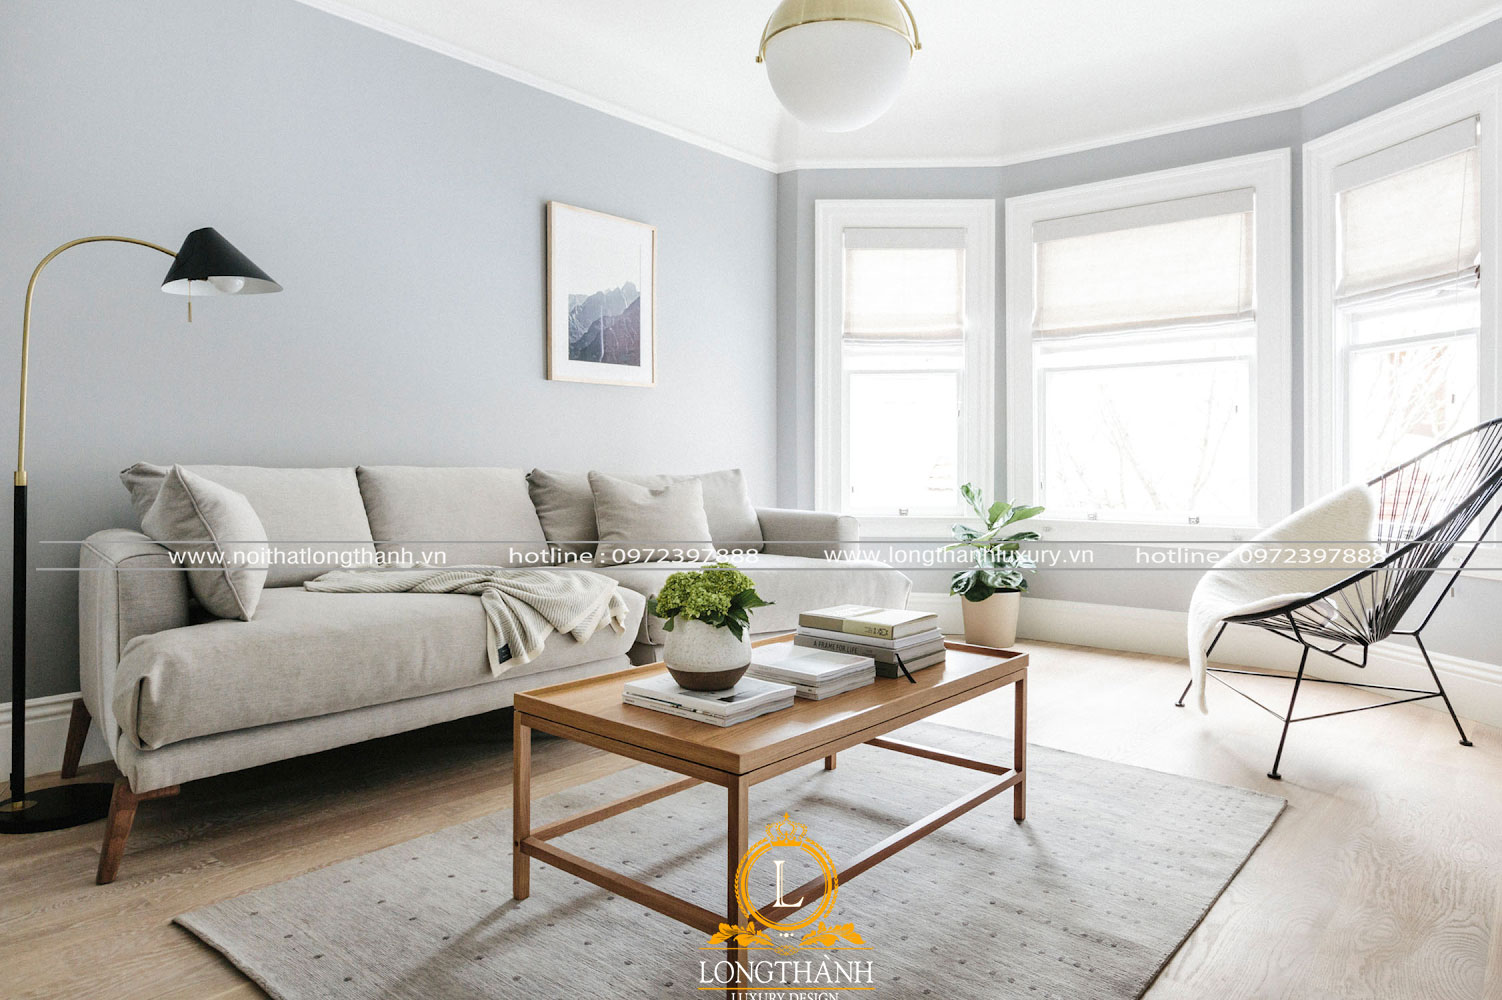 Sofa tối giản cho phòng khách hiện đại